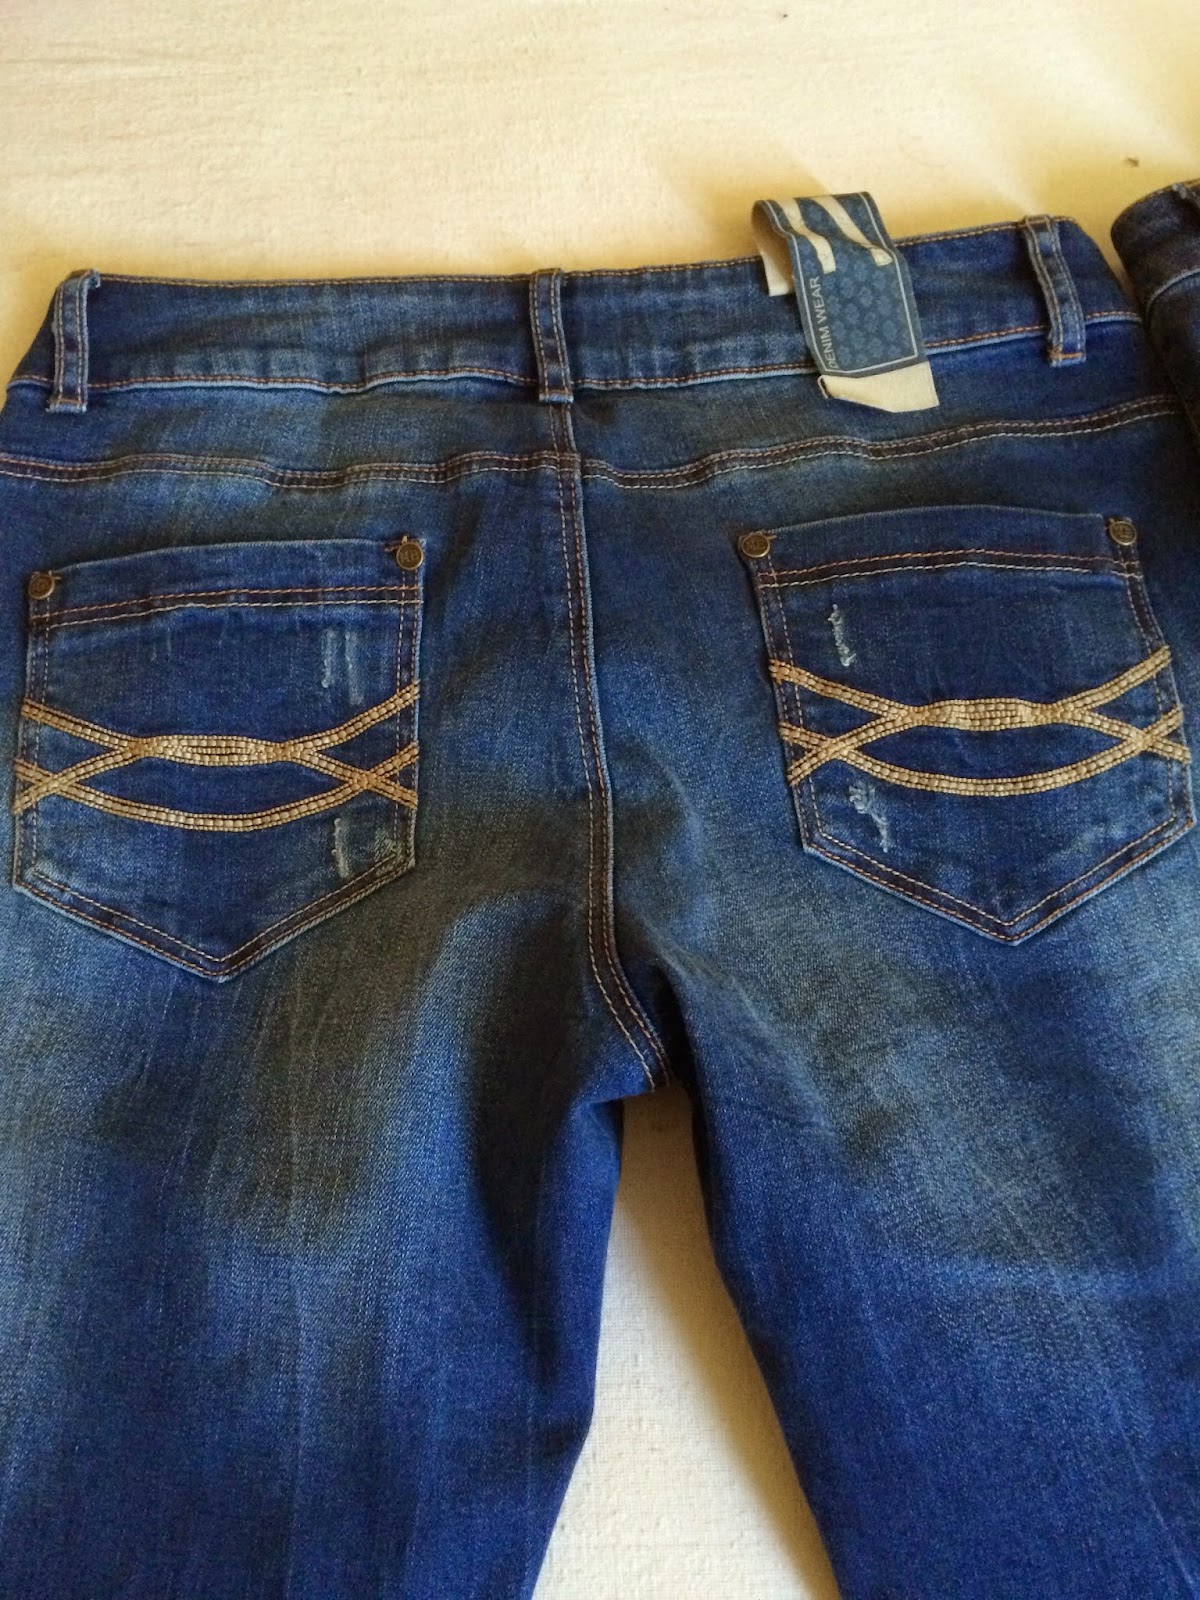 *Werbung* Shoptest Jeans Fritz 21